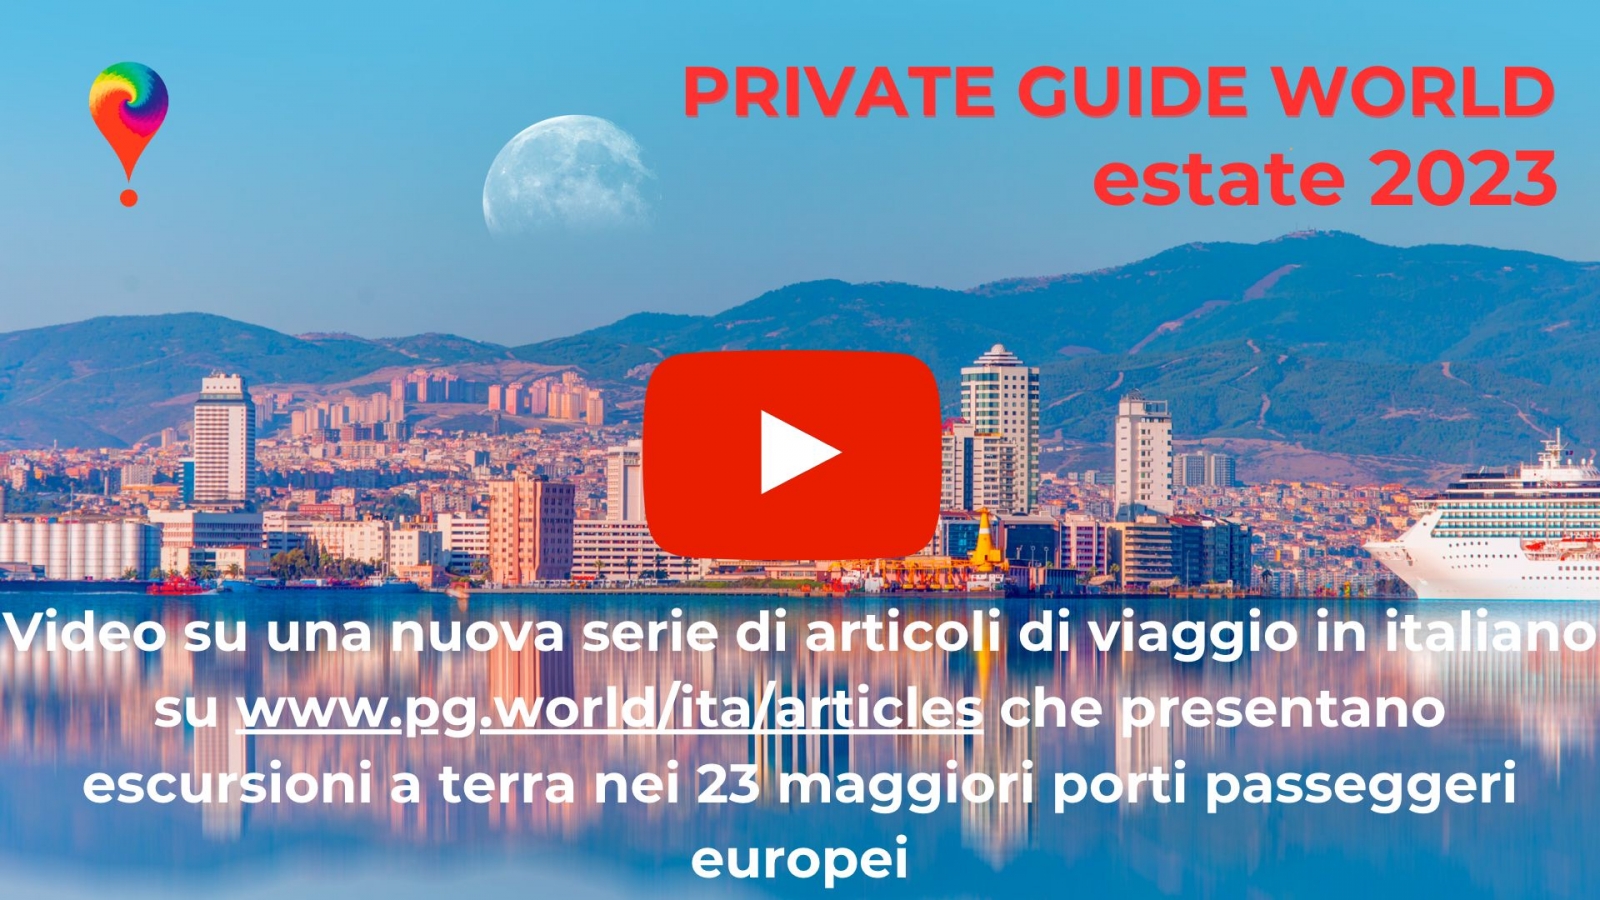 Video sul nostro canale YouTube @PrivateGuideWorld :: Escursioni a terra in 23 porti passeggeri d'Europa su www.pg.world